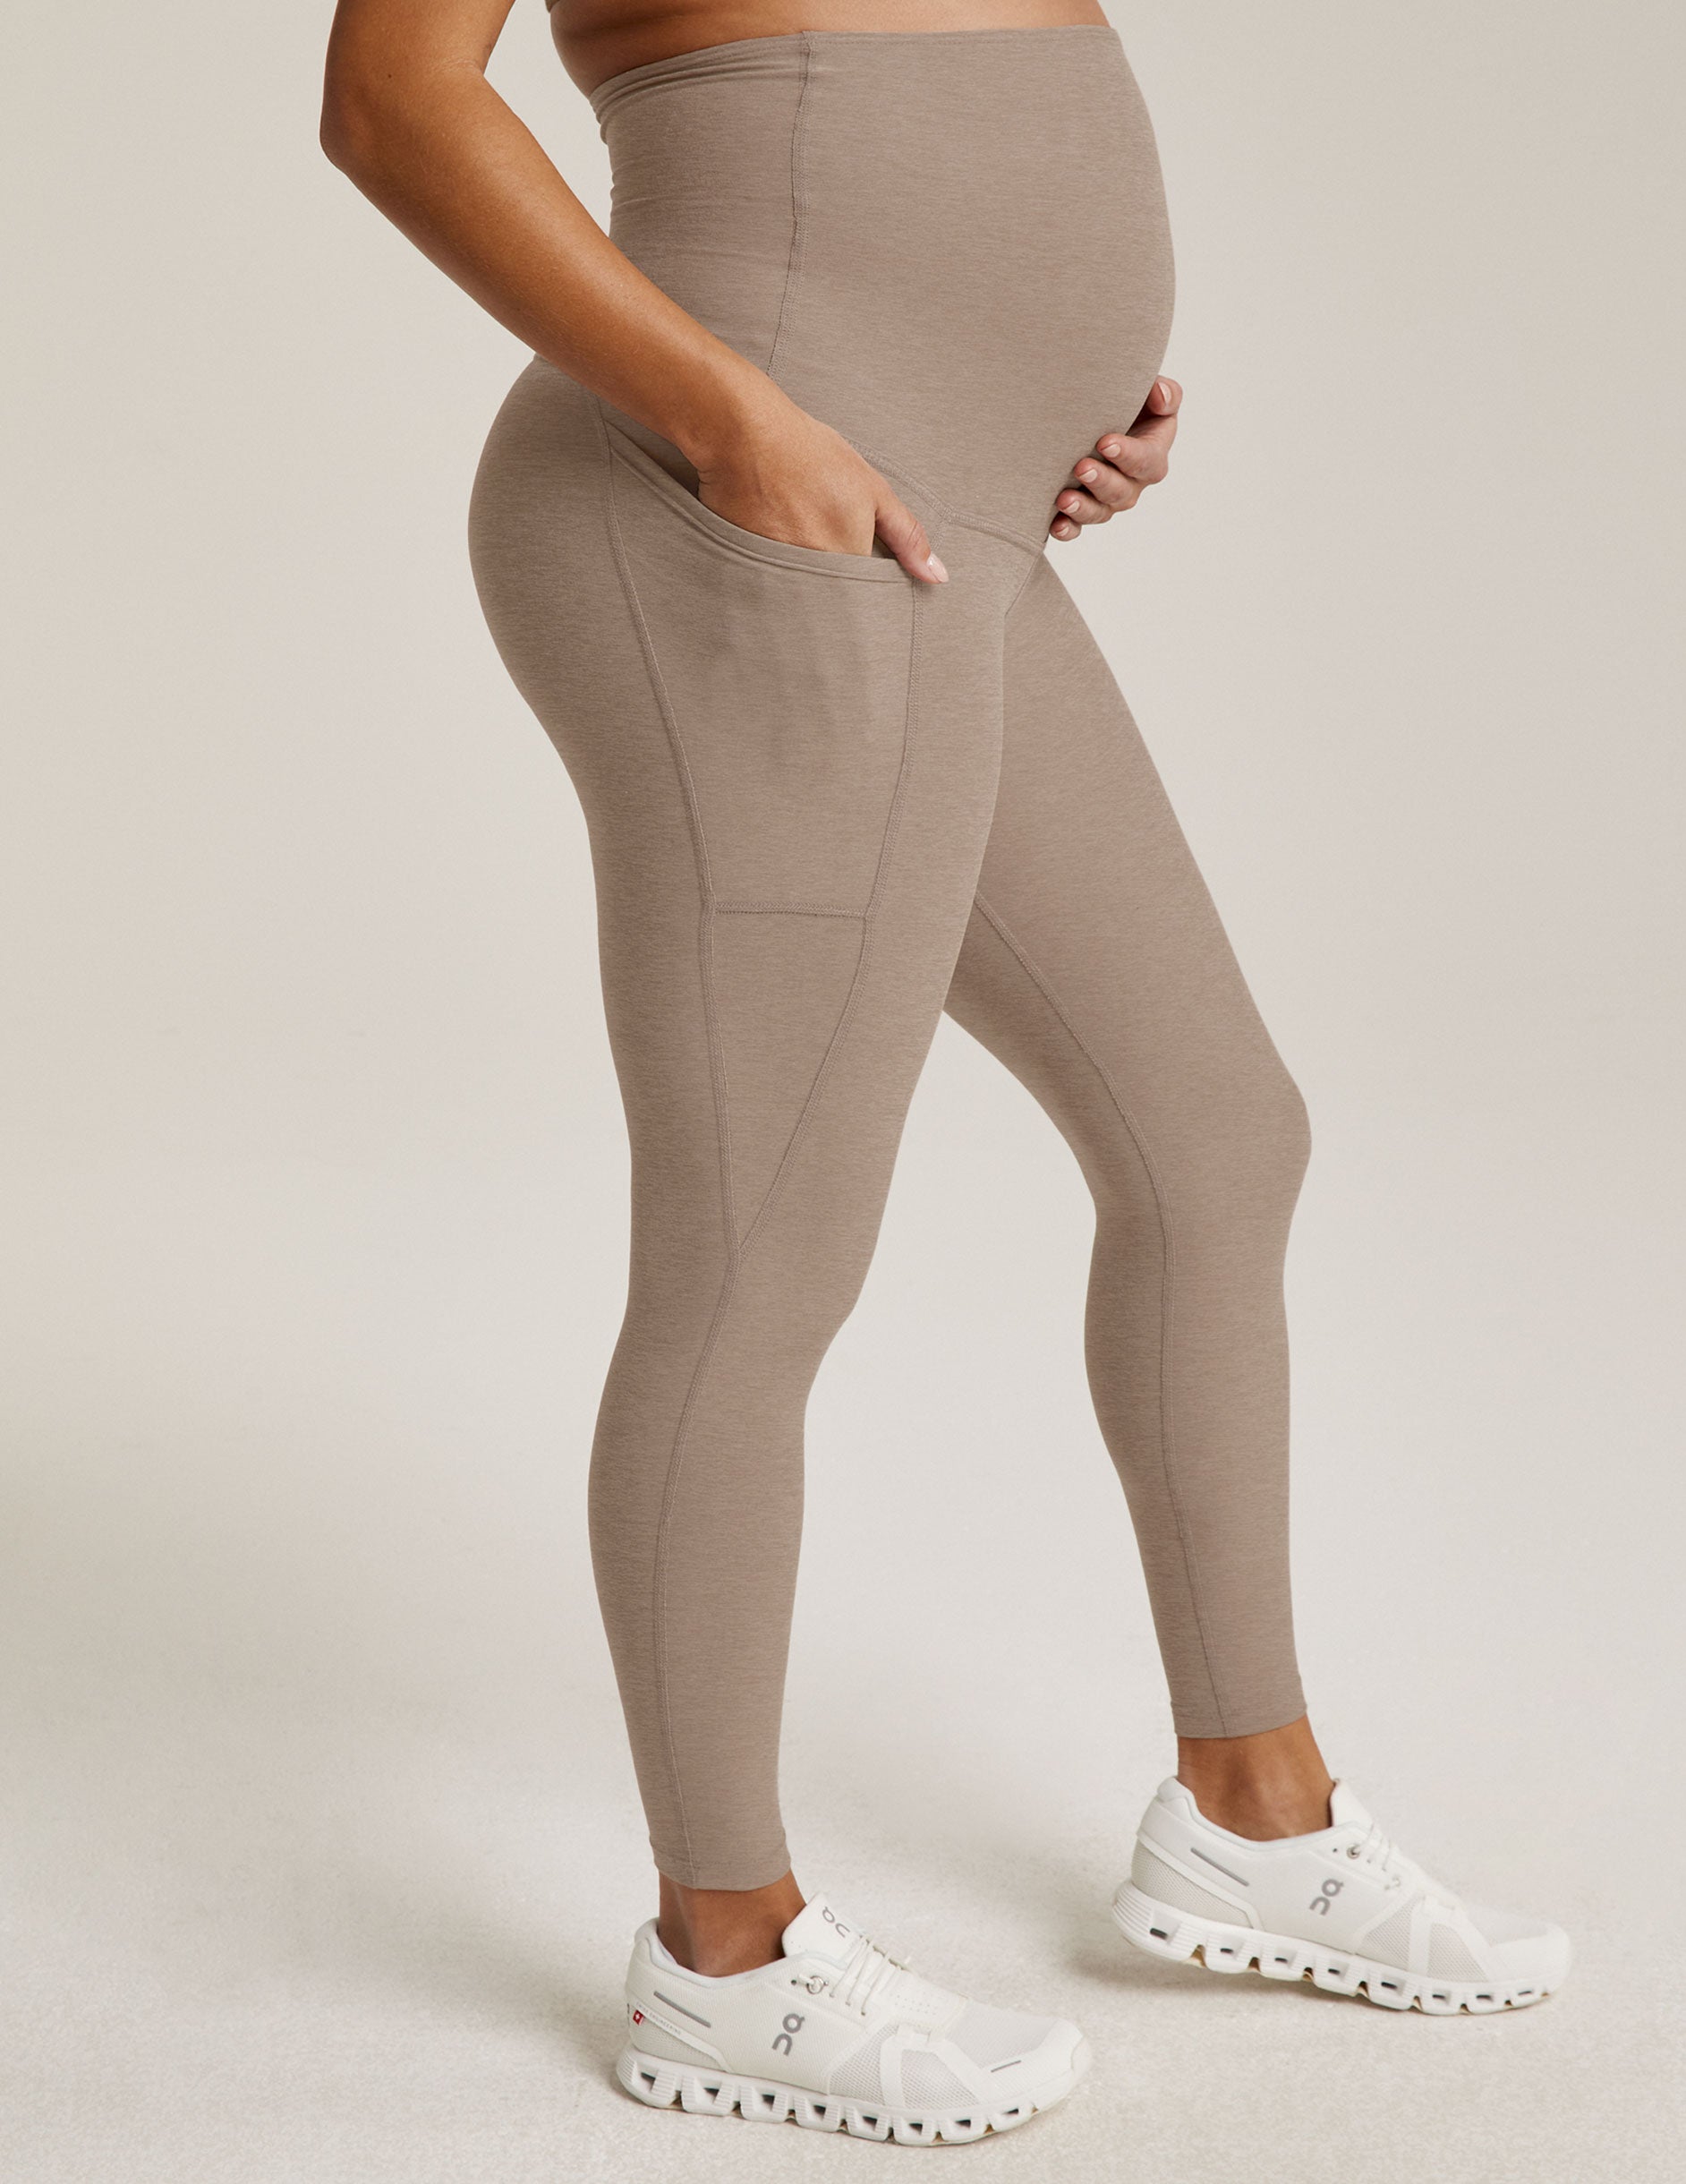 Wholesale maternity yoga pants For Comfort In Motherhood 